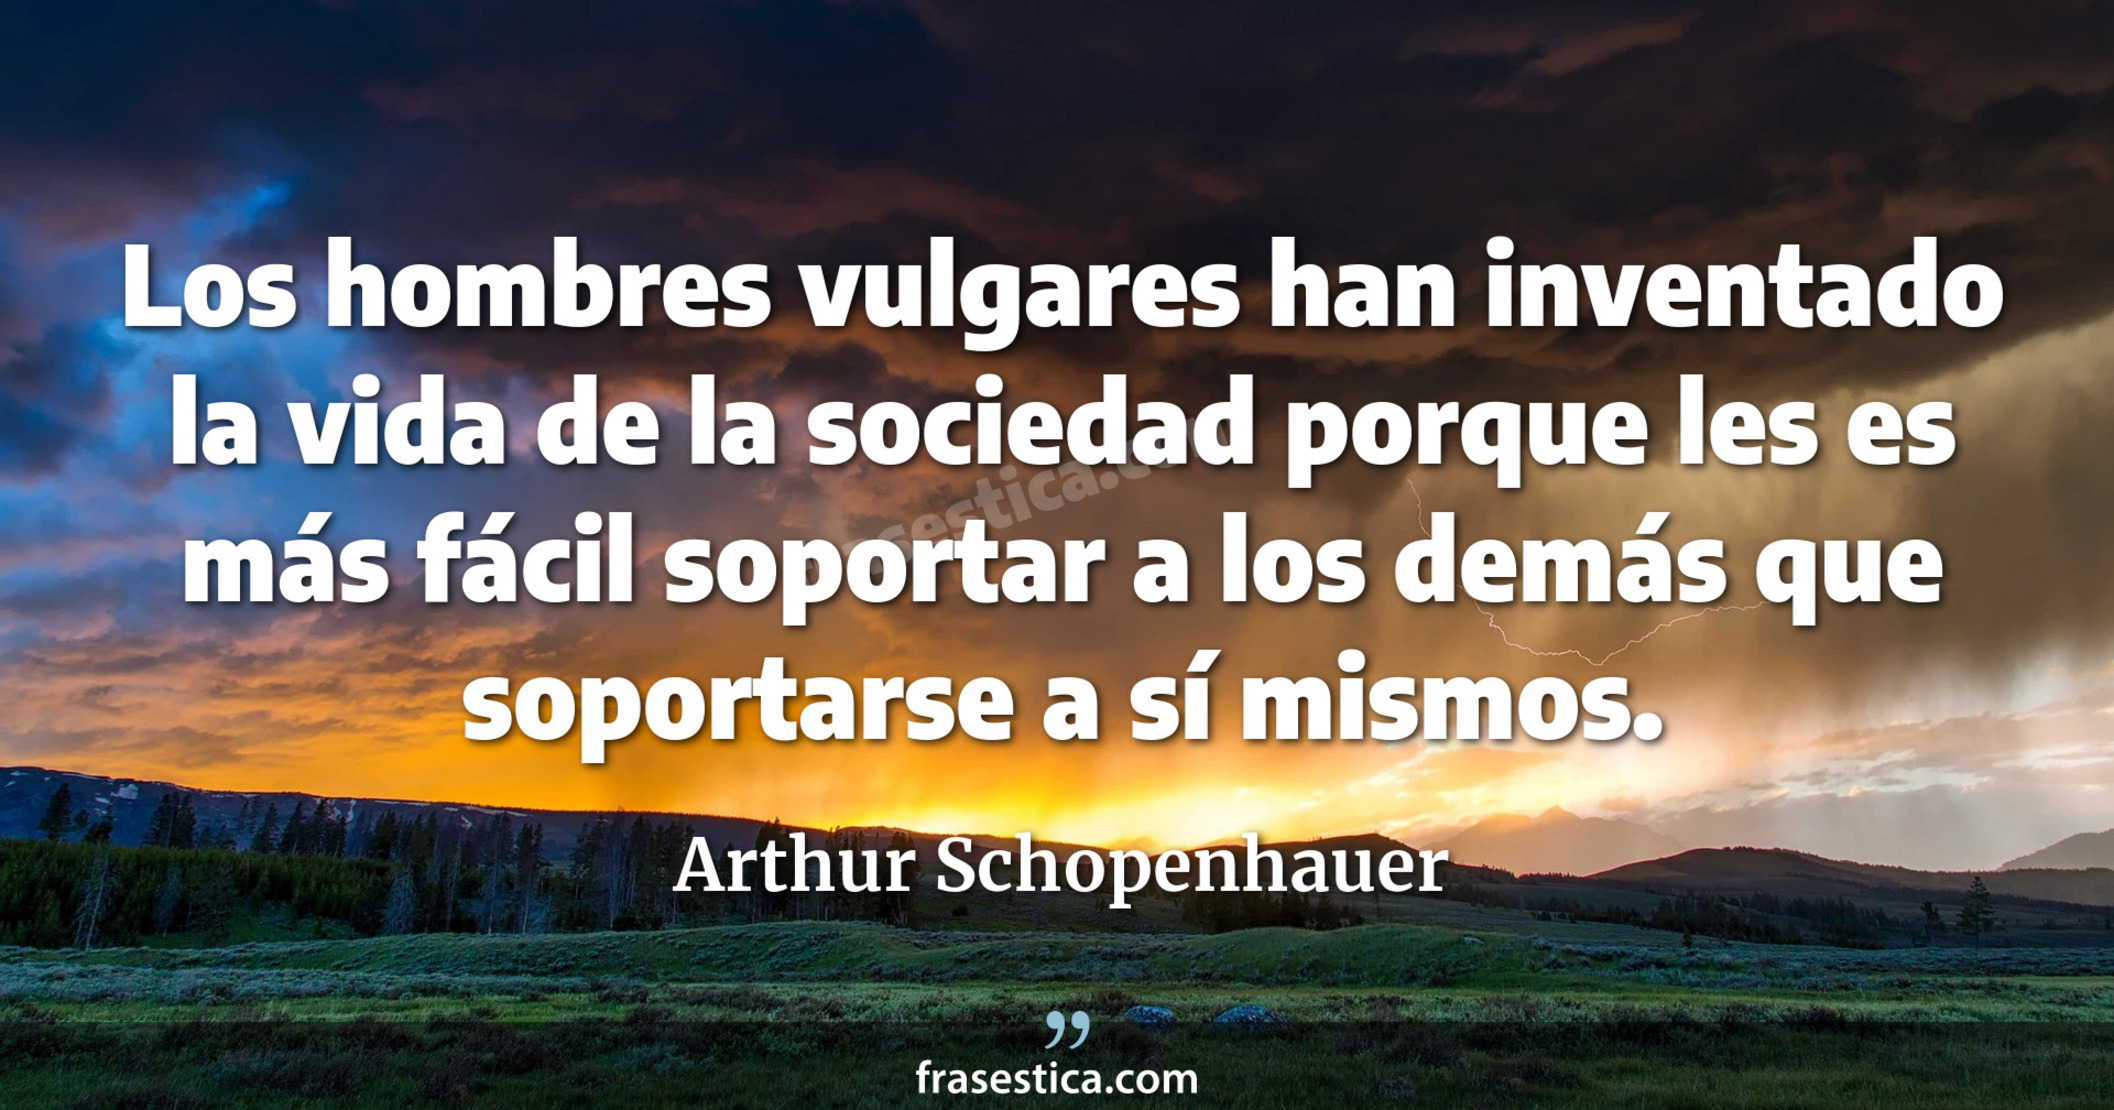 Los hombres vulgares han inventado la vida de la sociedad porque les es más fácil soportar a los demás que soportarse a sí mismos. - Arthur Schopenhauer